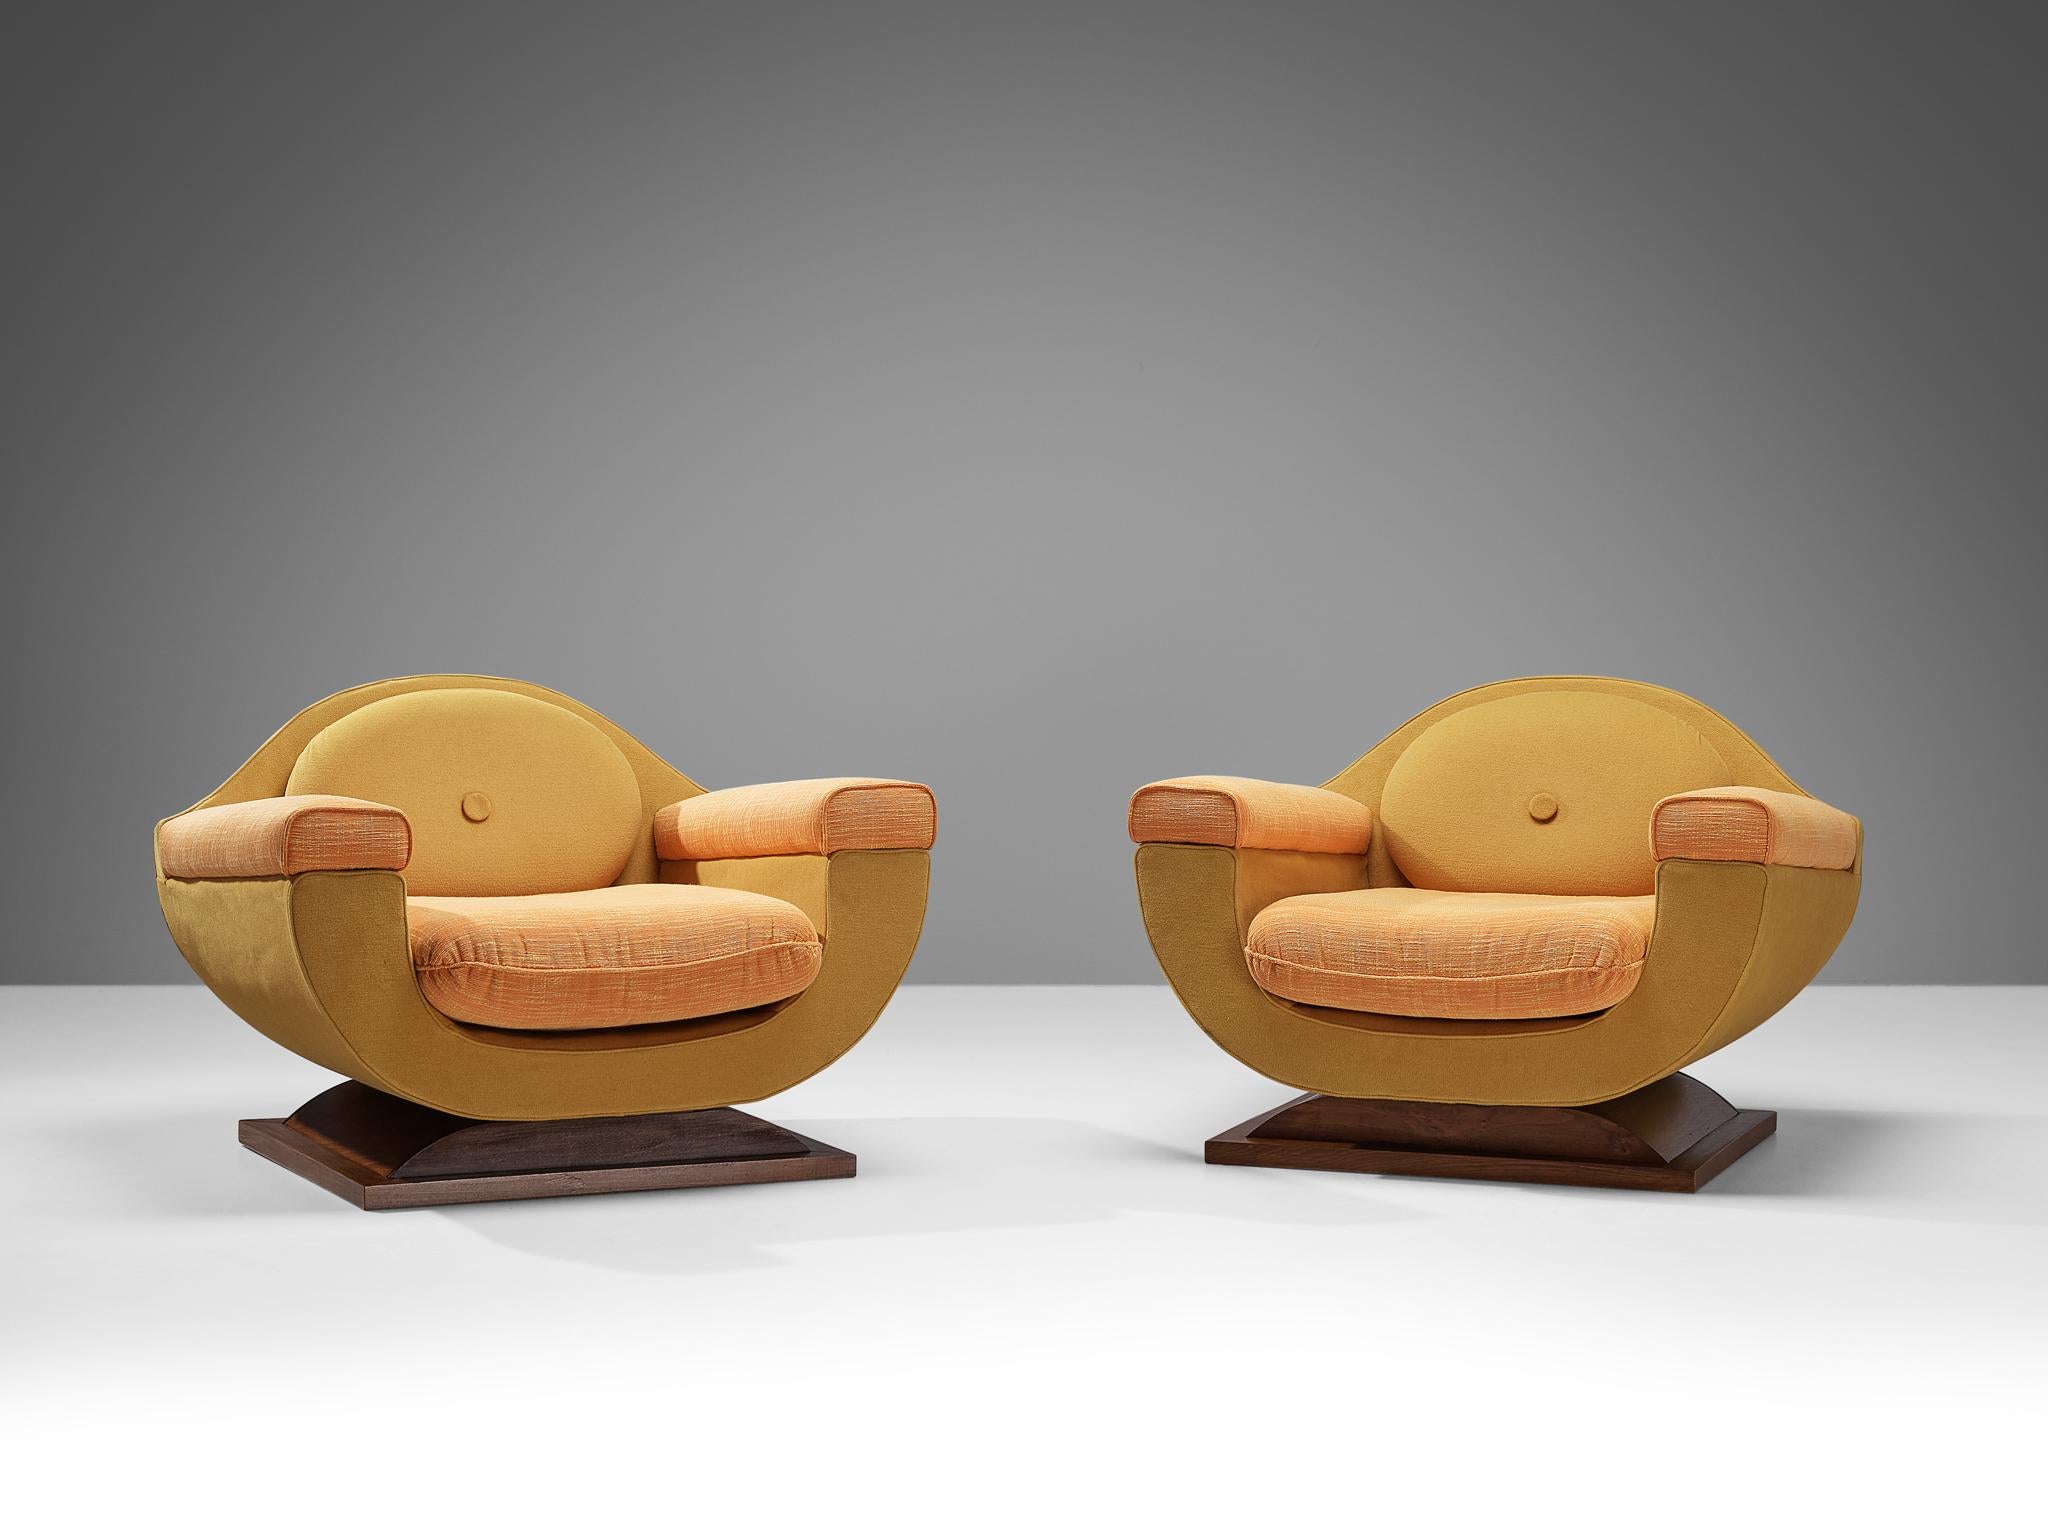 Paire de chaises longues, tissu, noyer teinté, Italie, années 1940

Ces chaises de salon exquises sont la quintessence du design Art déco italien, connu pour ses courbes épurées et l'accent mis sur les formes géométriques. D'une charmante apparence